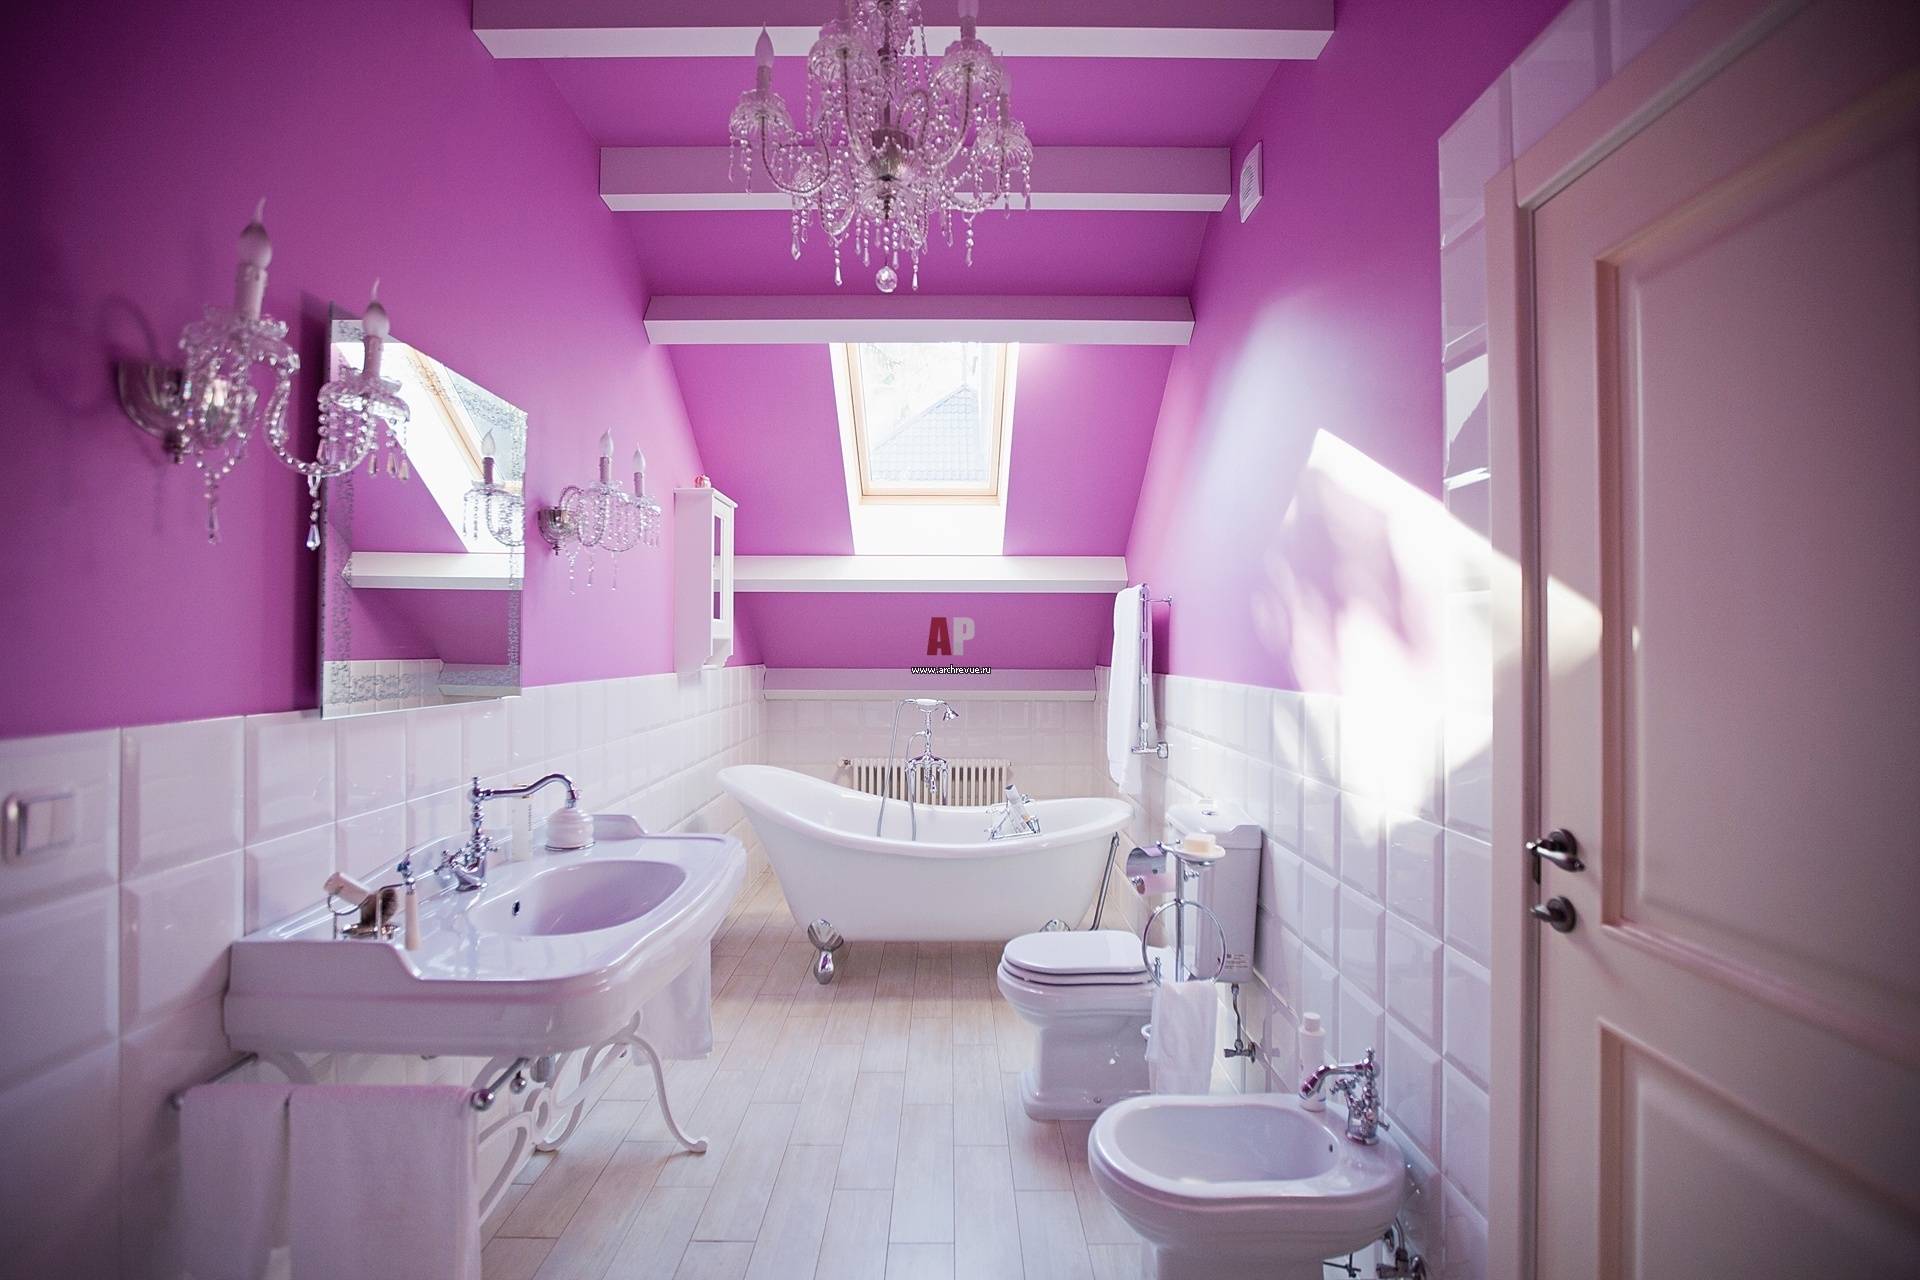 Ванная комната в сиреневых тонах: 35 потрясающих идей